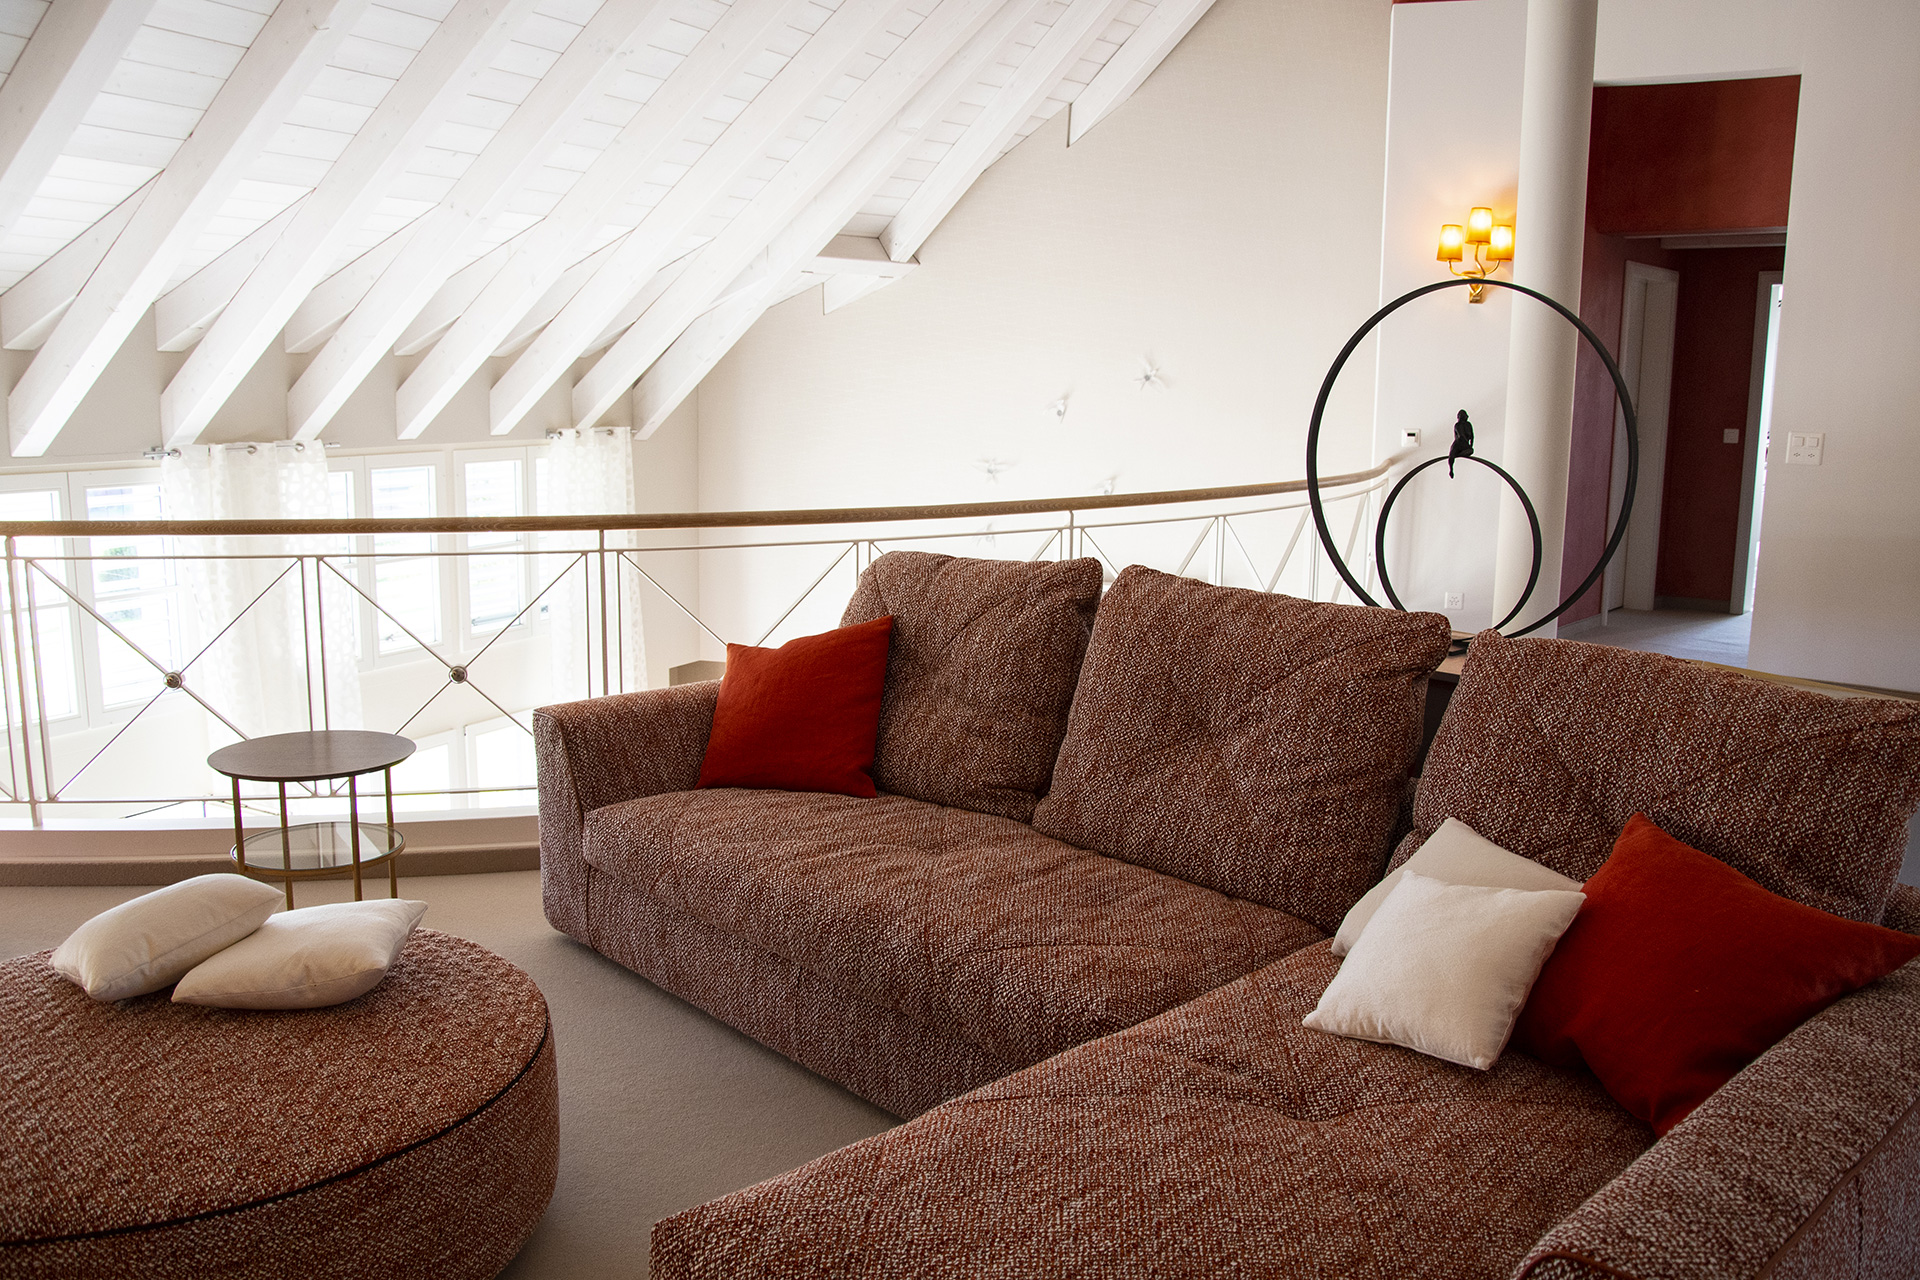 Lounge of a villa next to the Rhine by Borella Art Design